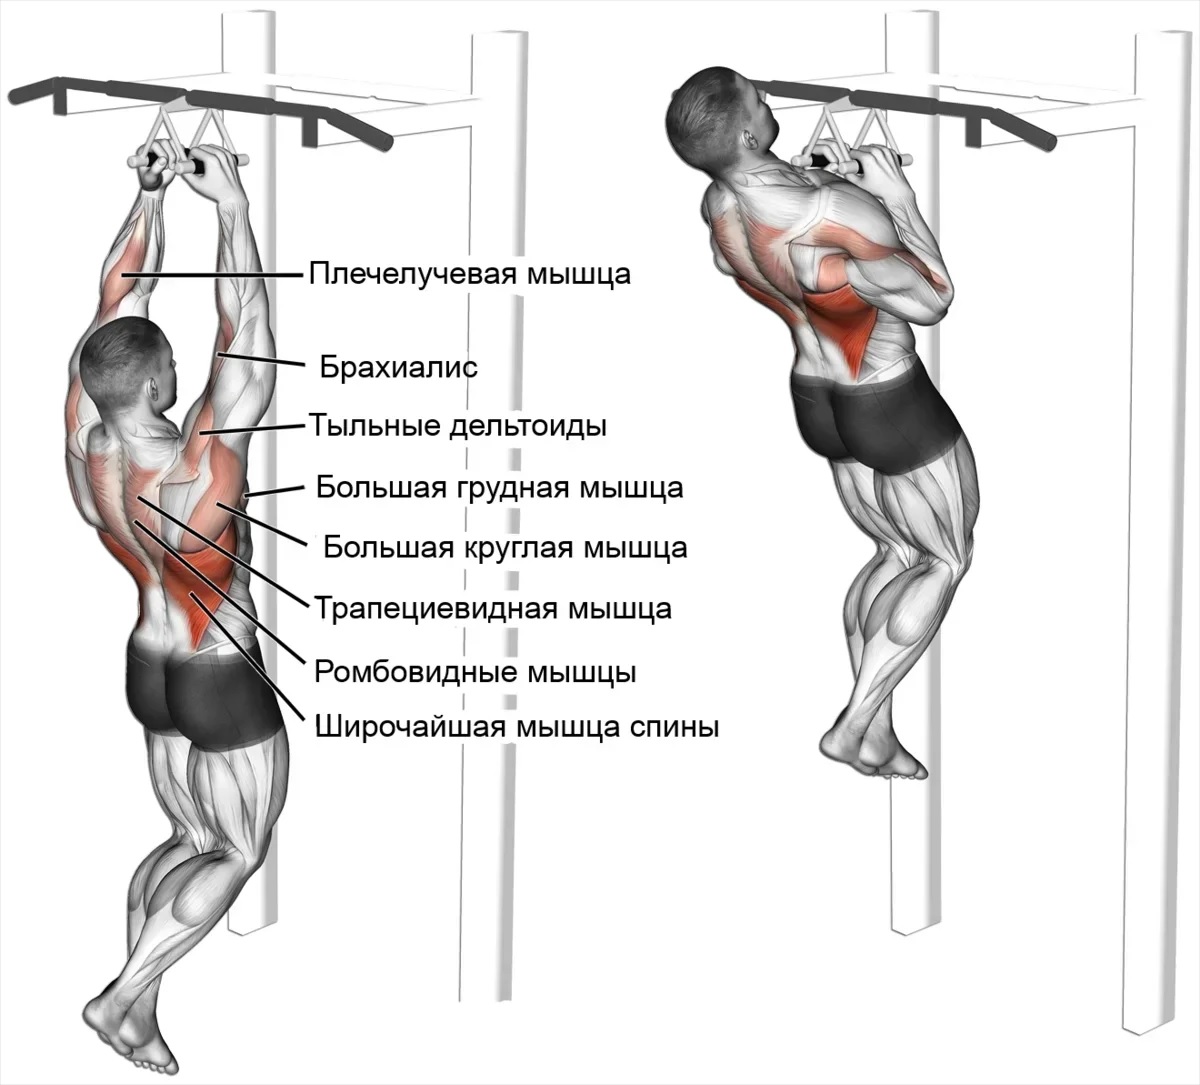 Подтягивания обратным хватом - какие мышцы работают? советы, рекомендации - tony.ru